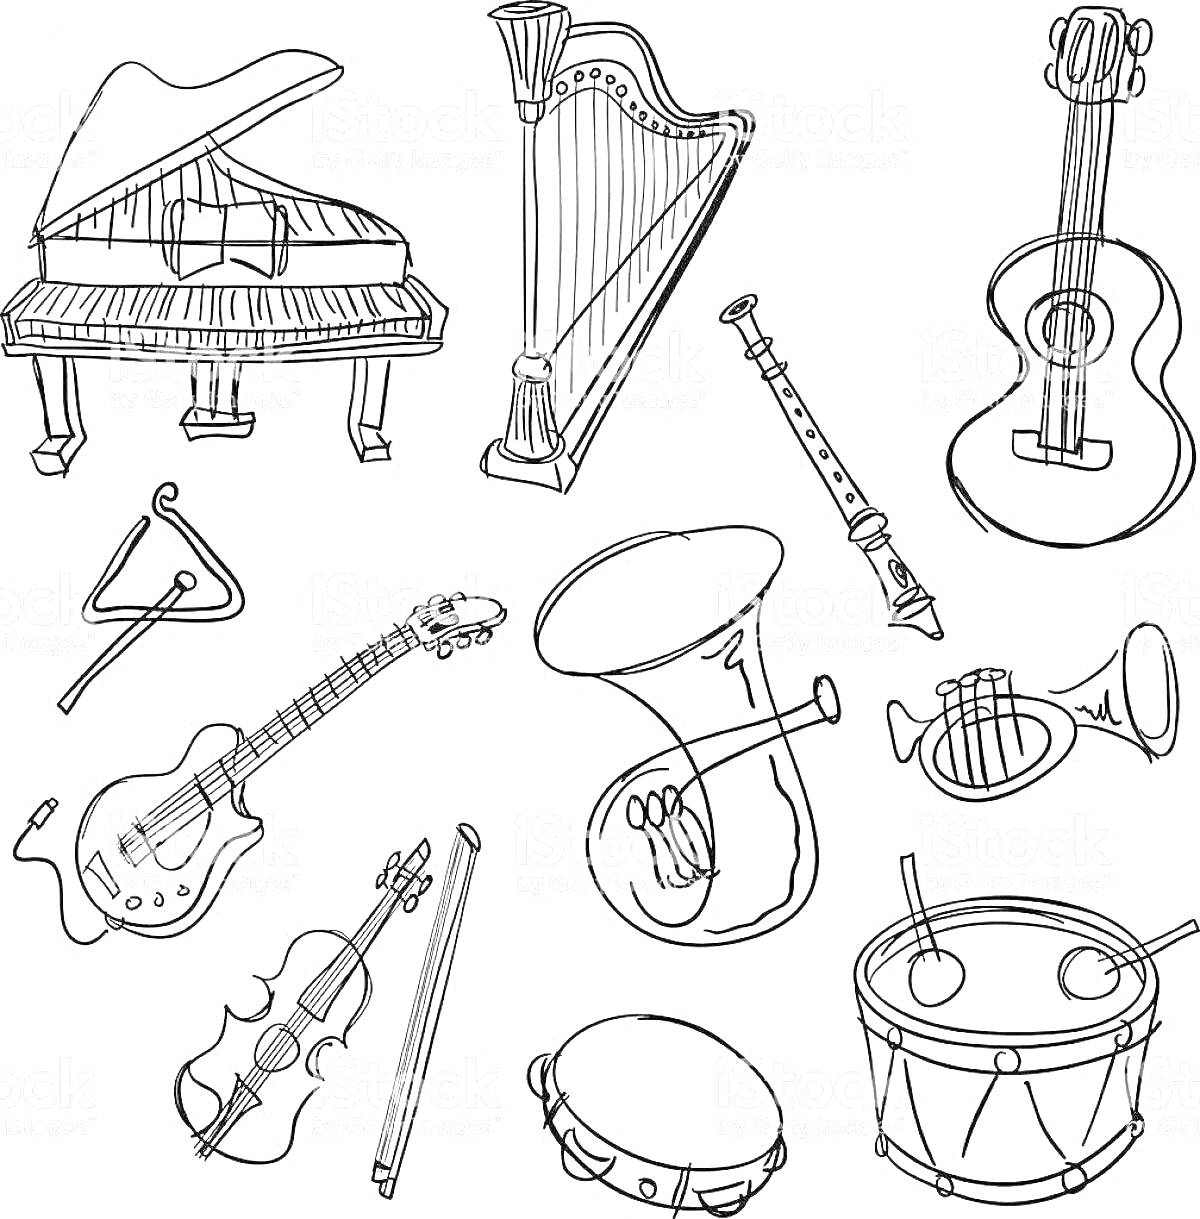 пианино, арфа, гитара, треугольник, электрогитара, кларнет, валторна (фортепиано), труба, скрипка, контрабас, барабан с палочками